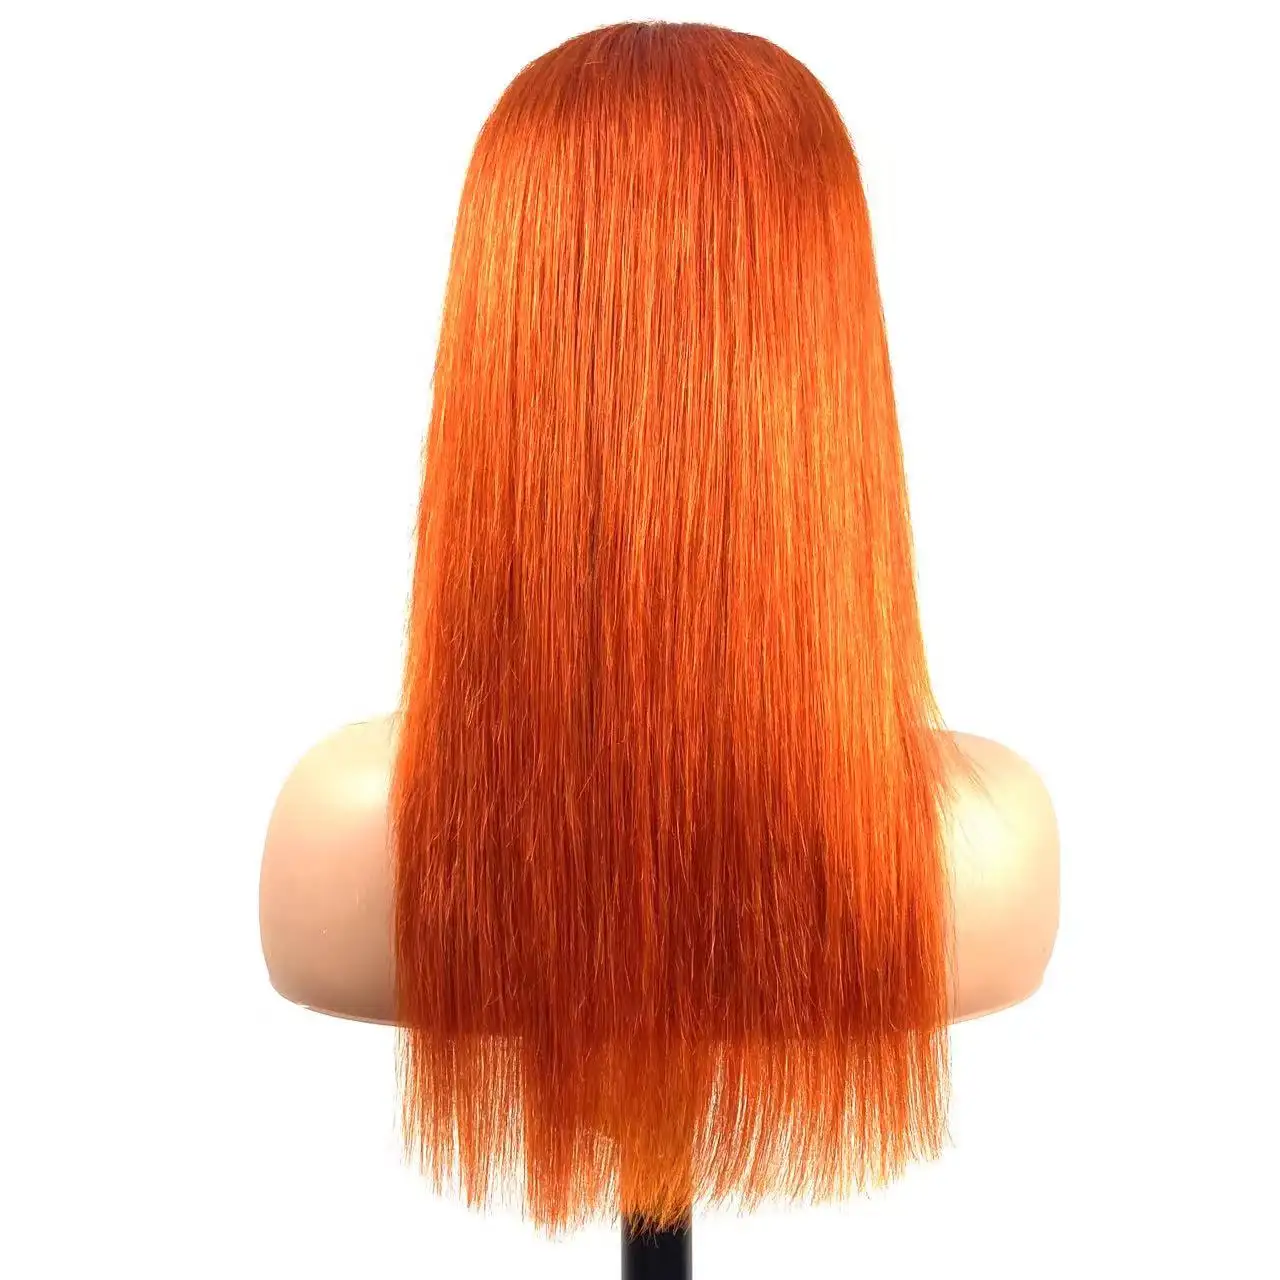 Naranja rojo jengibre naranja 250% densidad 100% cabello humano cabello virgen 13*4 pelucas de cabello largo y recto